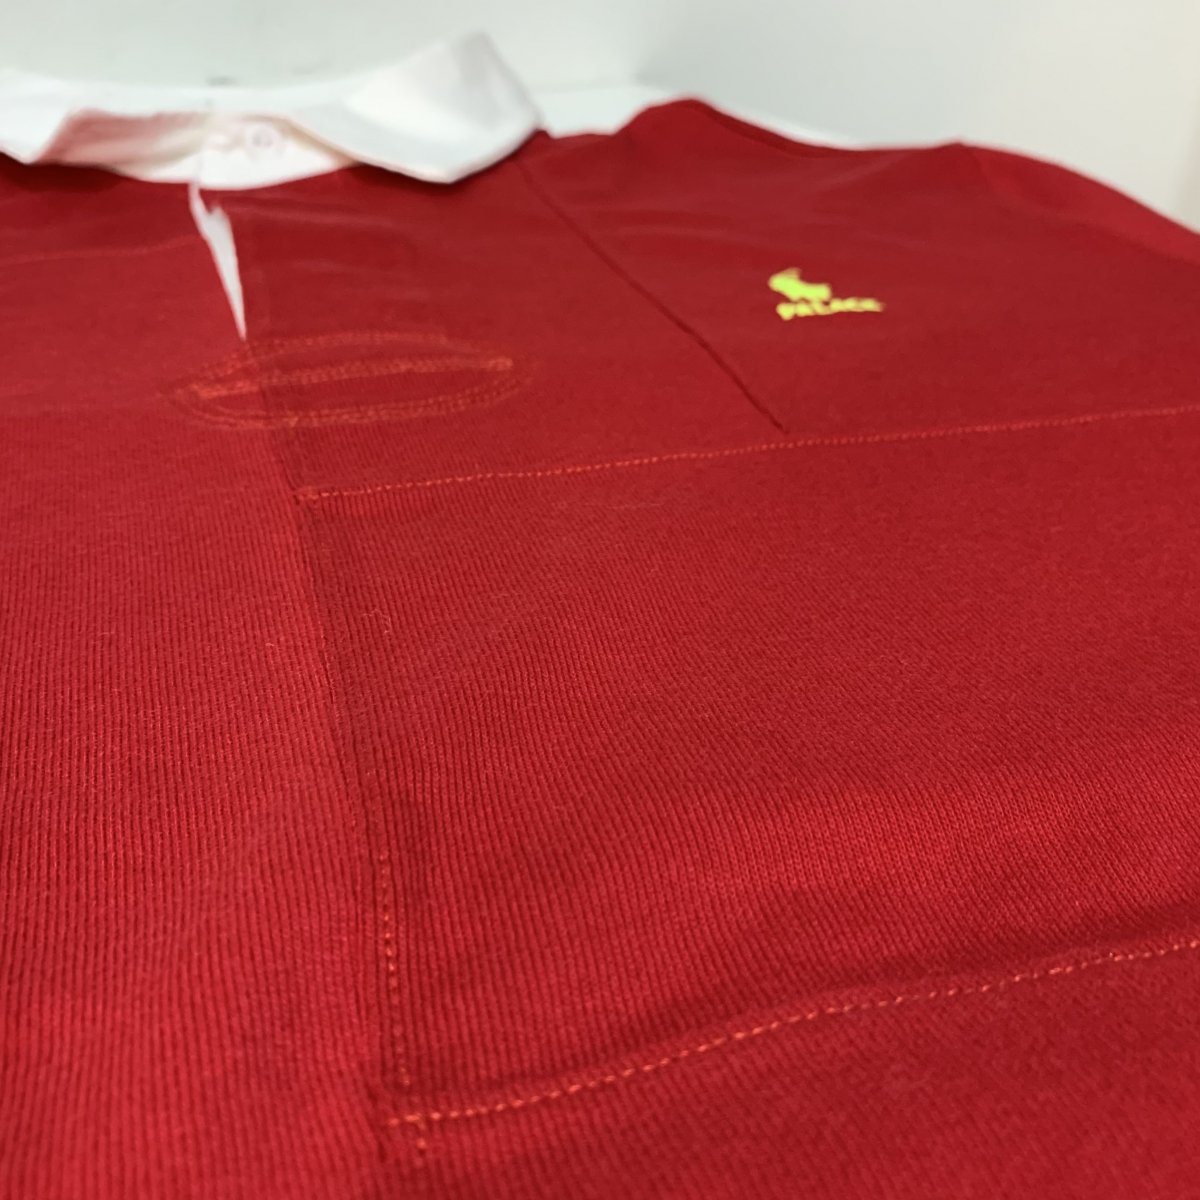 ‼ PALACE × POLO ラガーシャツ 赤 Mサイズ 送料込み